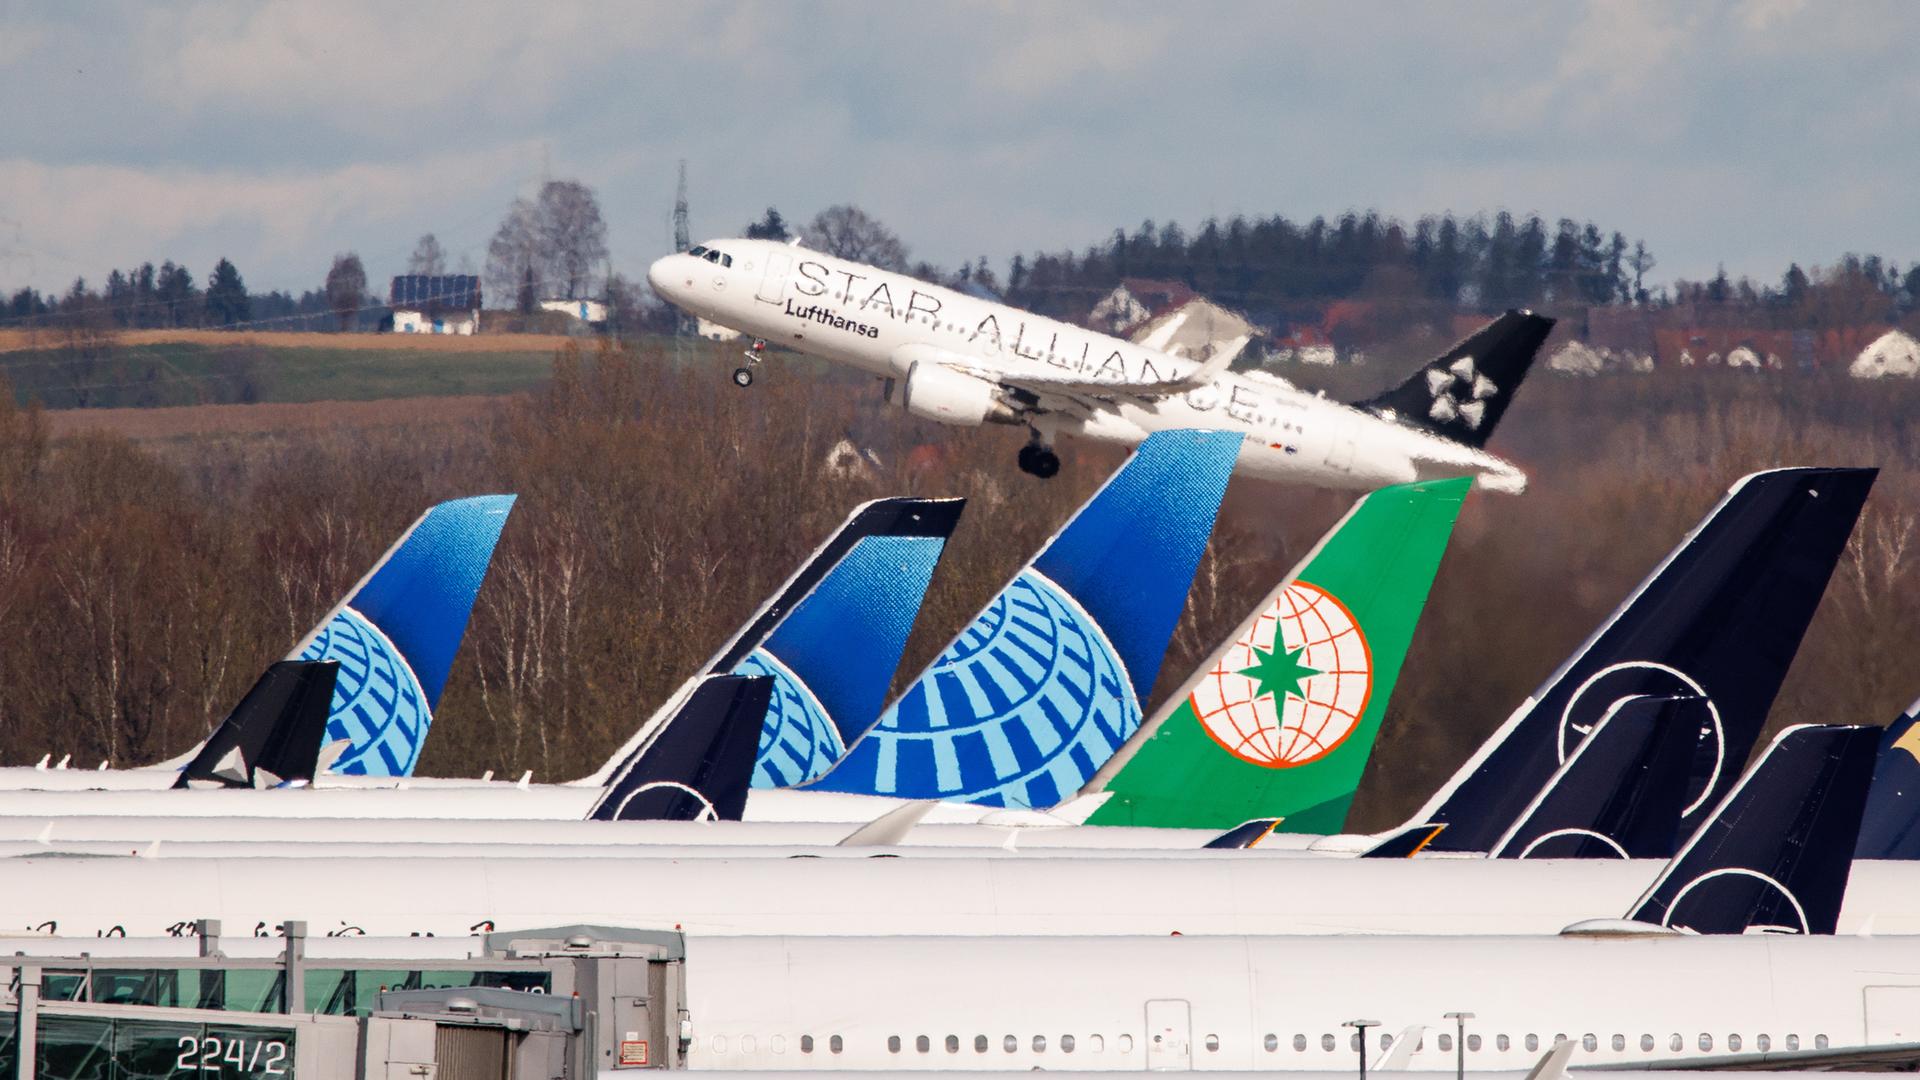 Ein Lufthansa-Airbus startet vom Flughafen in München, während im Vordergrund zahlreiche weitere Maschinen verschiedener Airlines zu sehen sind.